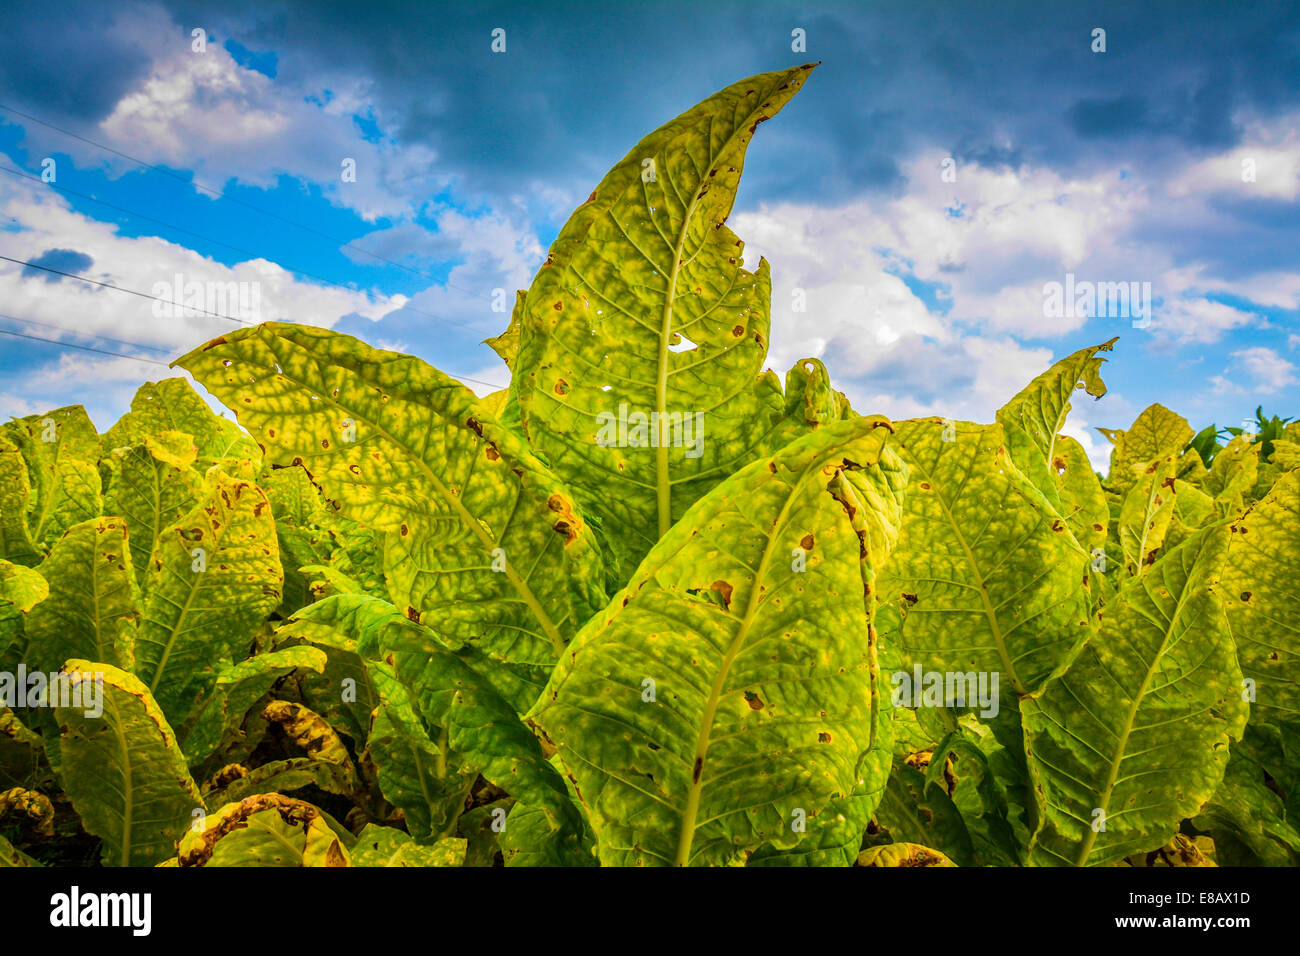 Un champ de plants de tabac sont matures et prêtes pour la récolte Banque D'Images